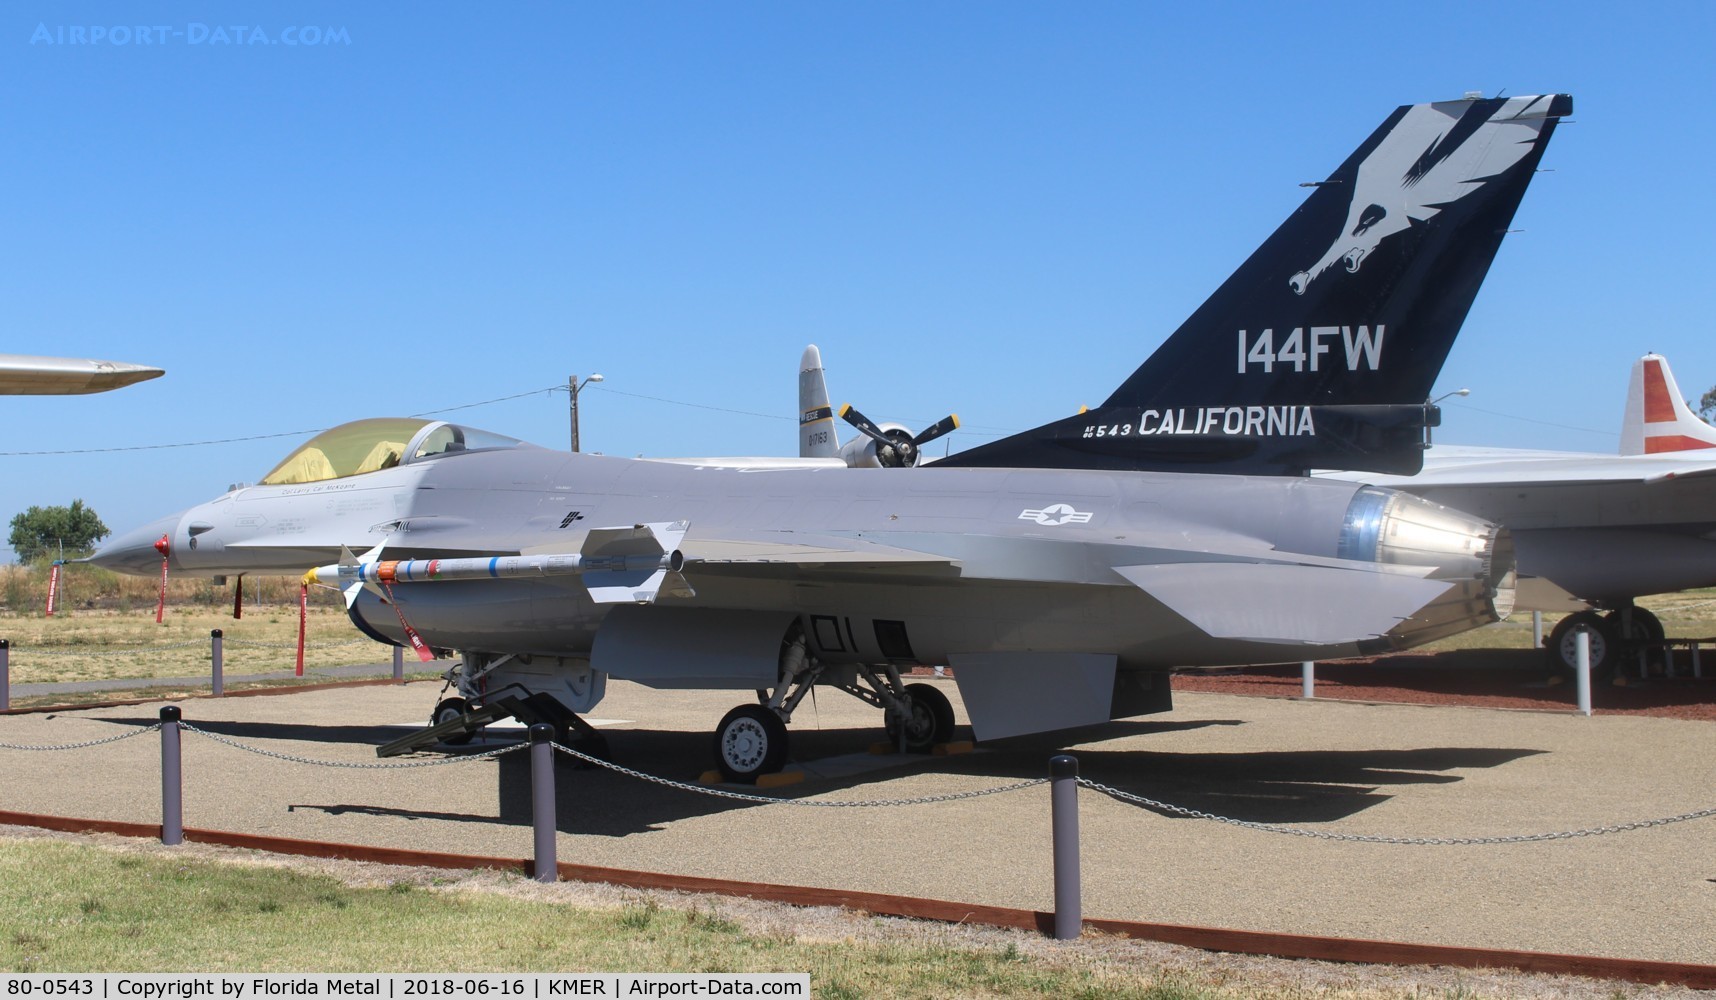 80-0543, 1980 General Dynamics F-16A Fighting Falcon C/N 61-264, F-16A